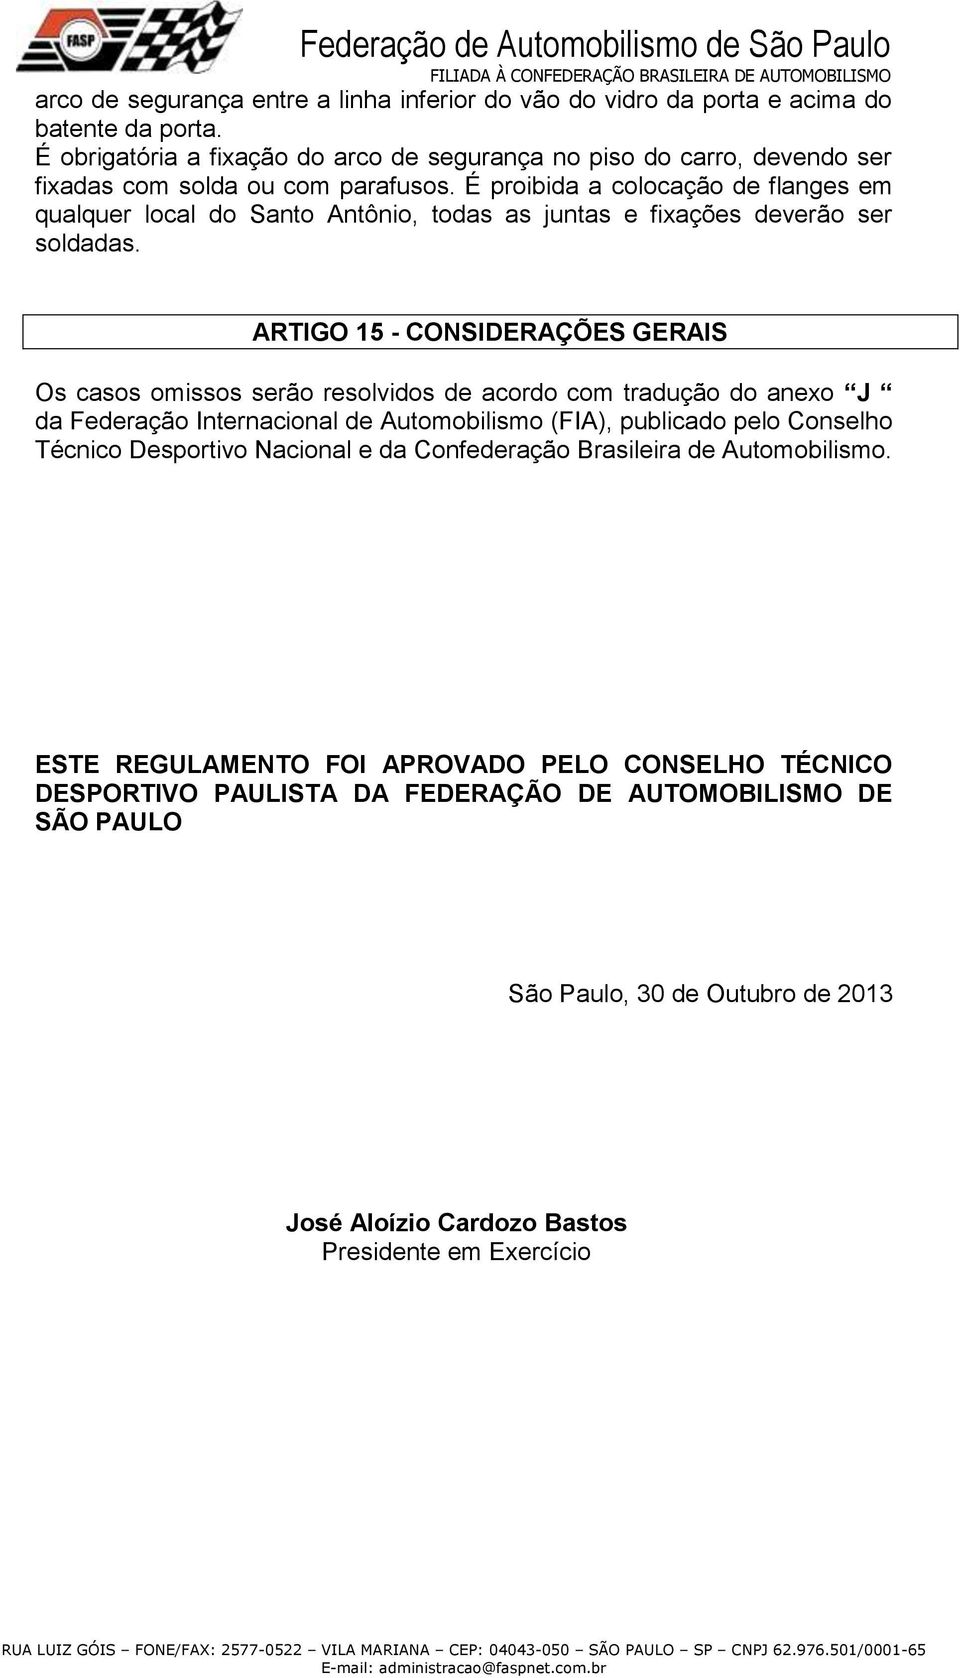 É proibida a colocação de flanges em qualquer local do Santo Antônio, todas as juntas e fixações deverão ser soldadas.